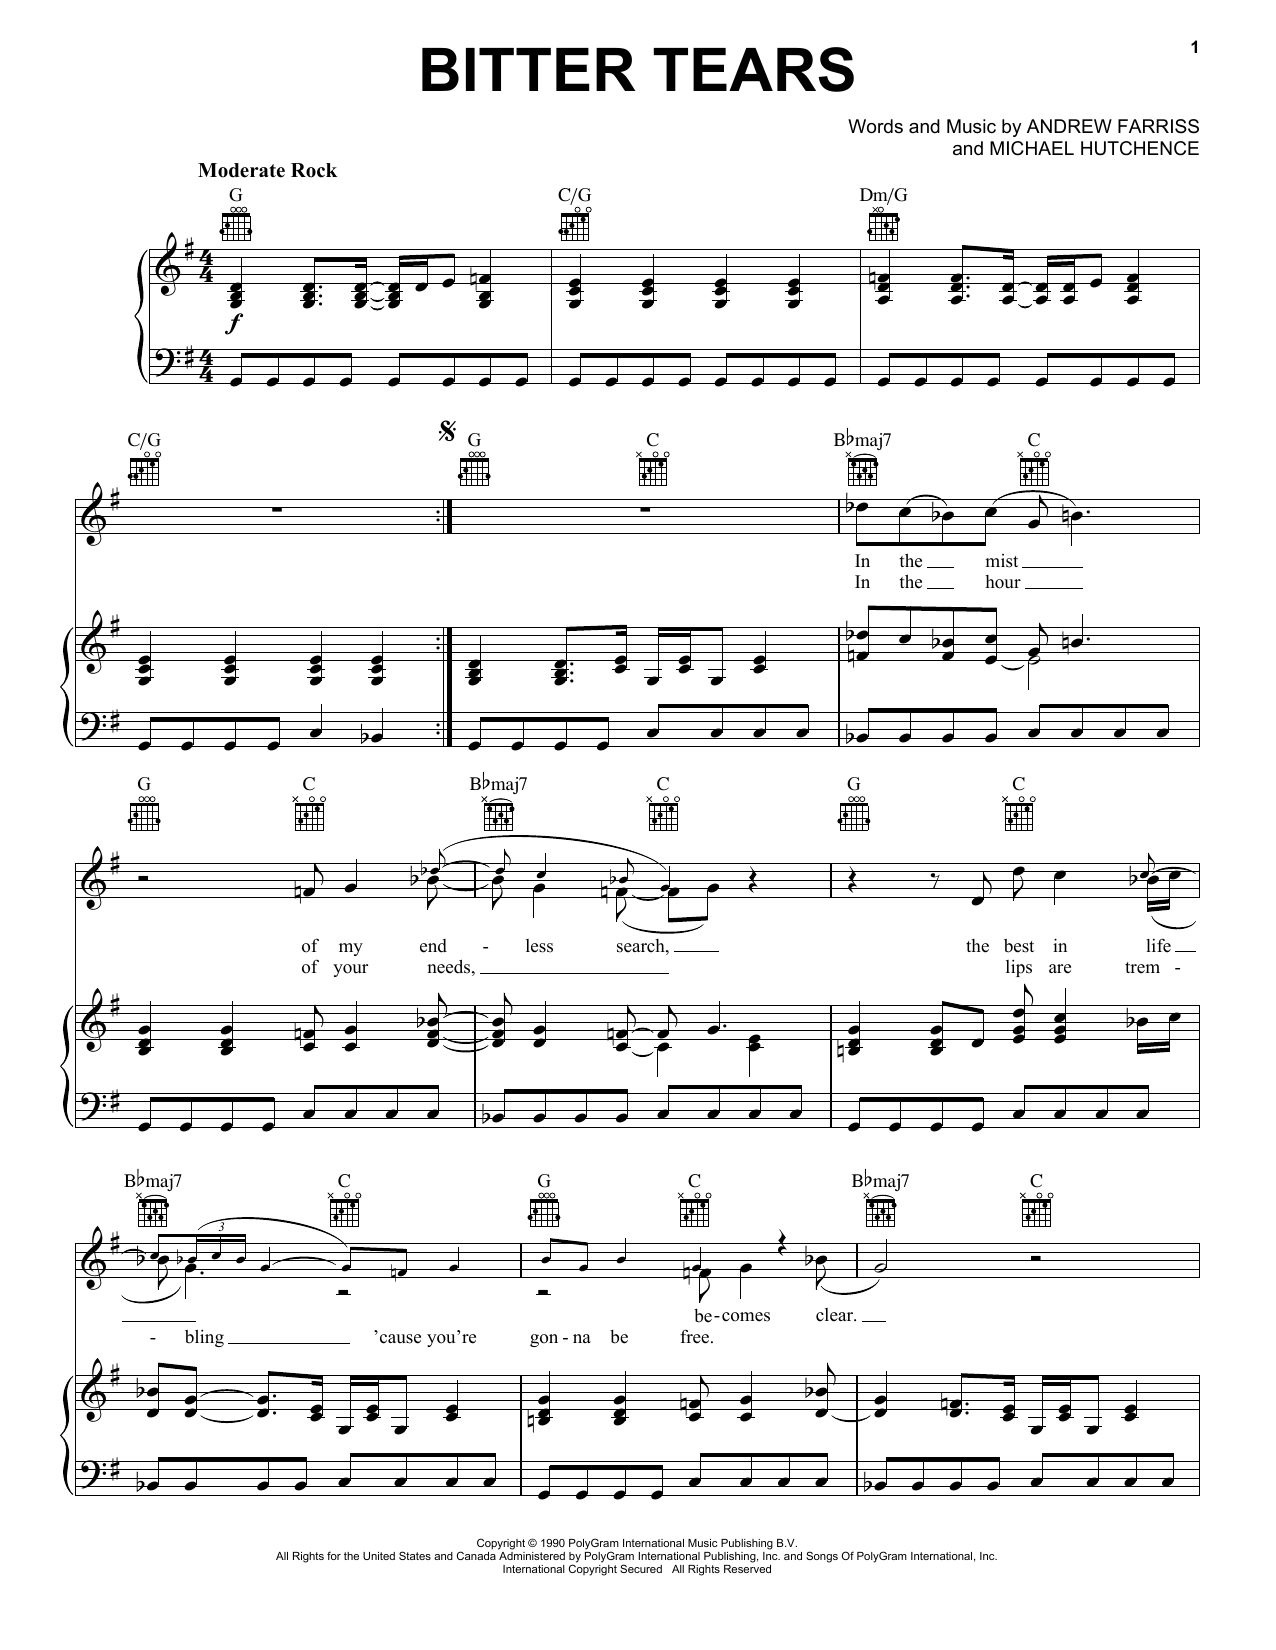 INXS Bitter Tears sheet music notes printable PDF score